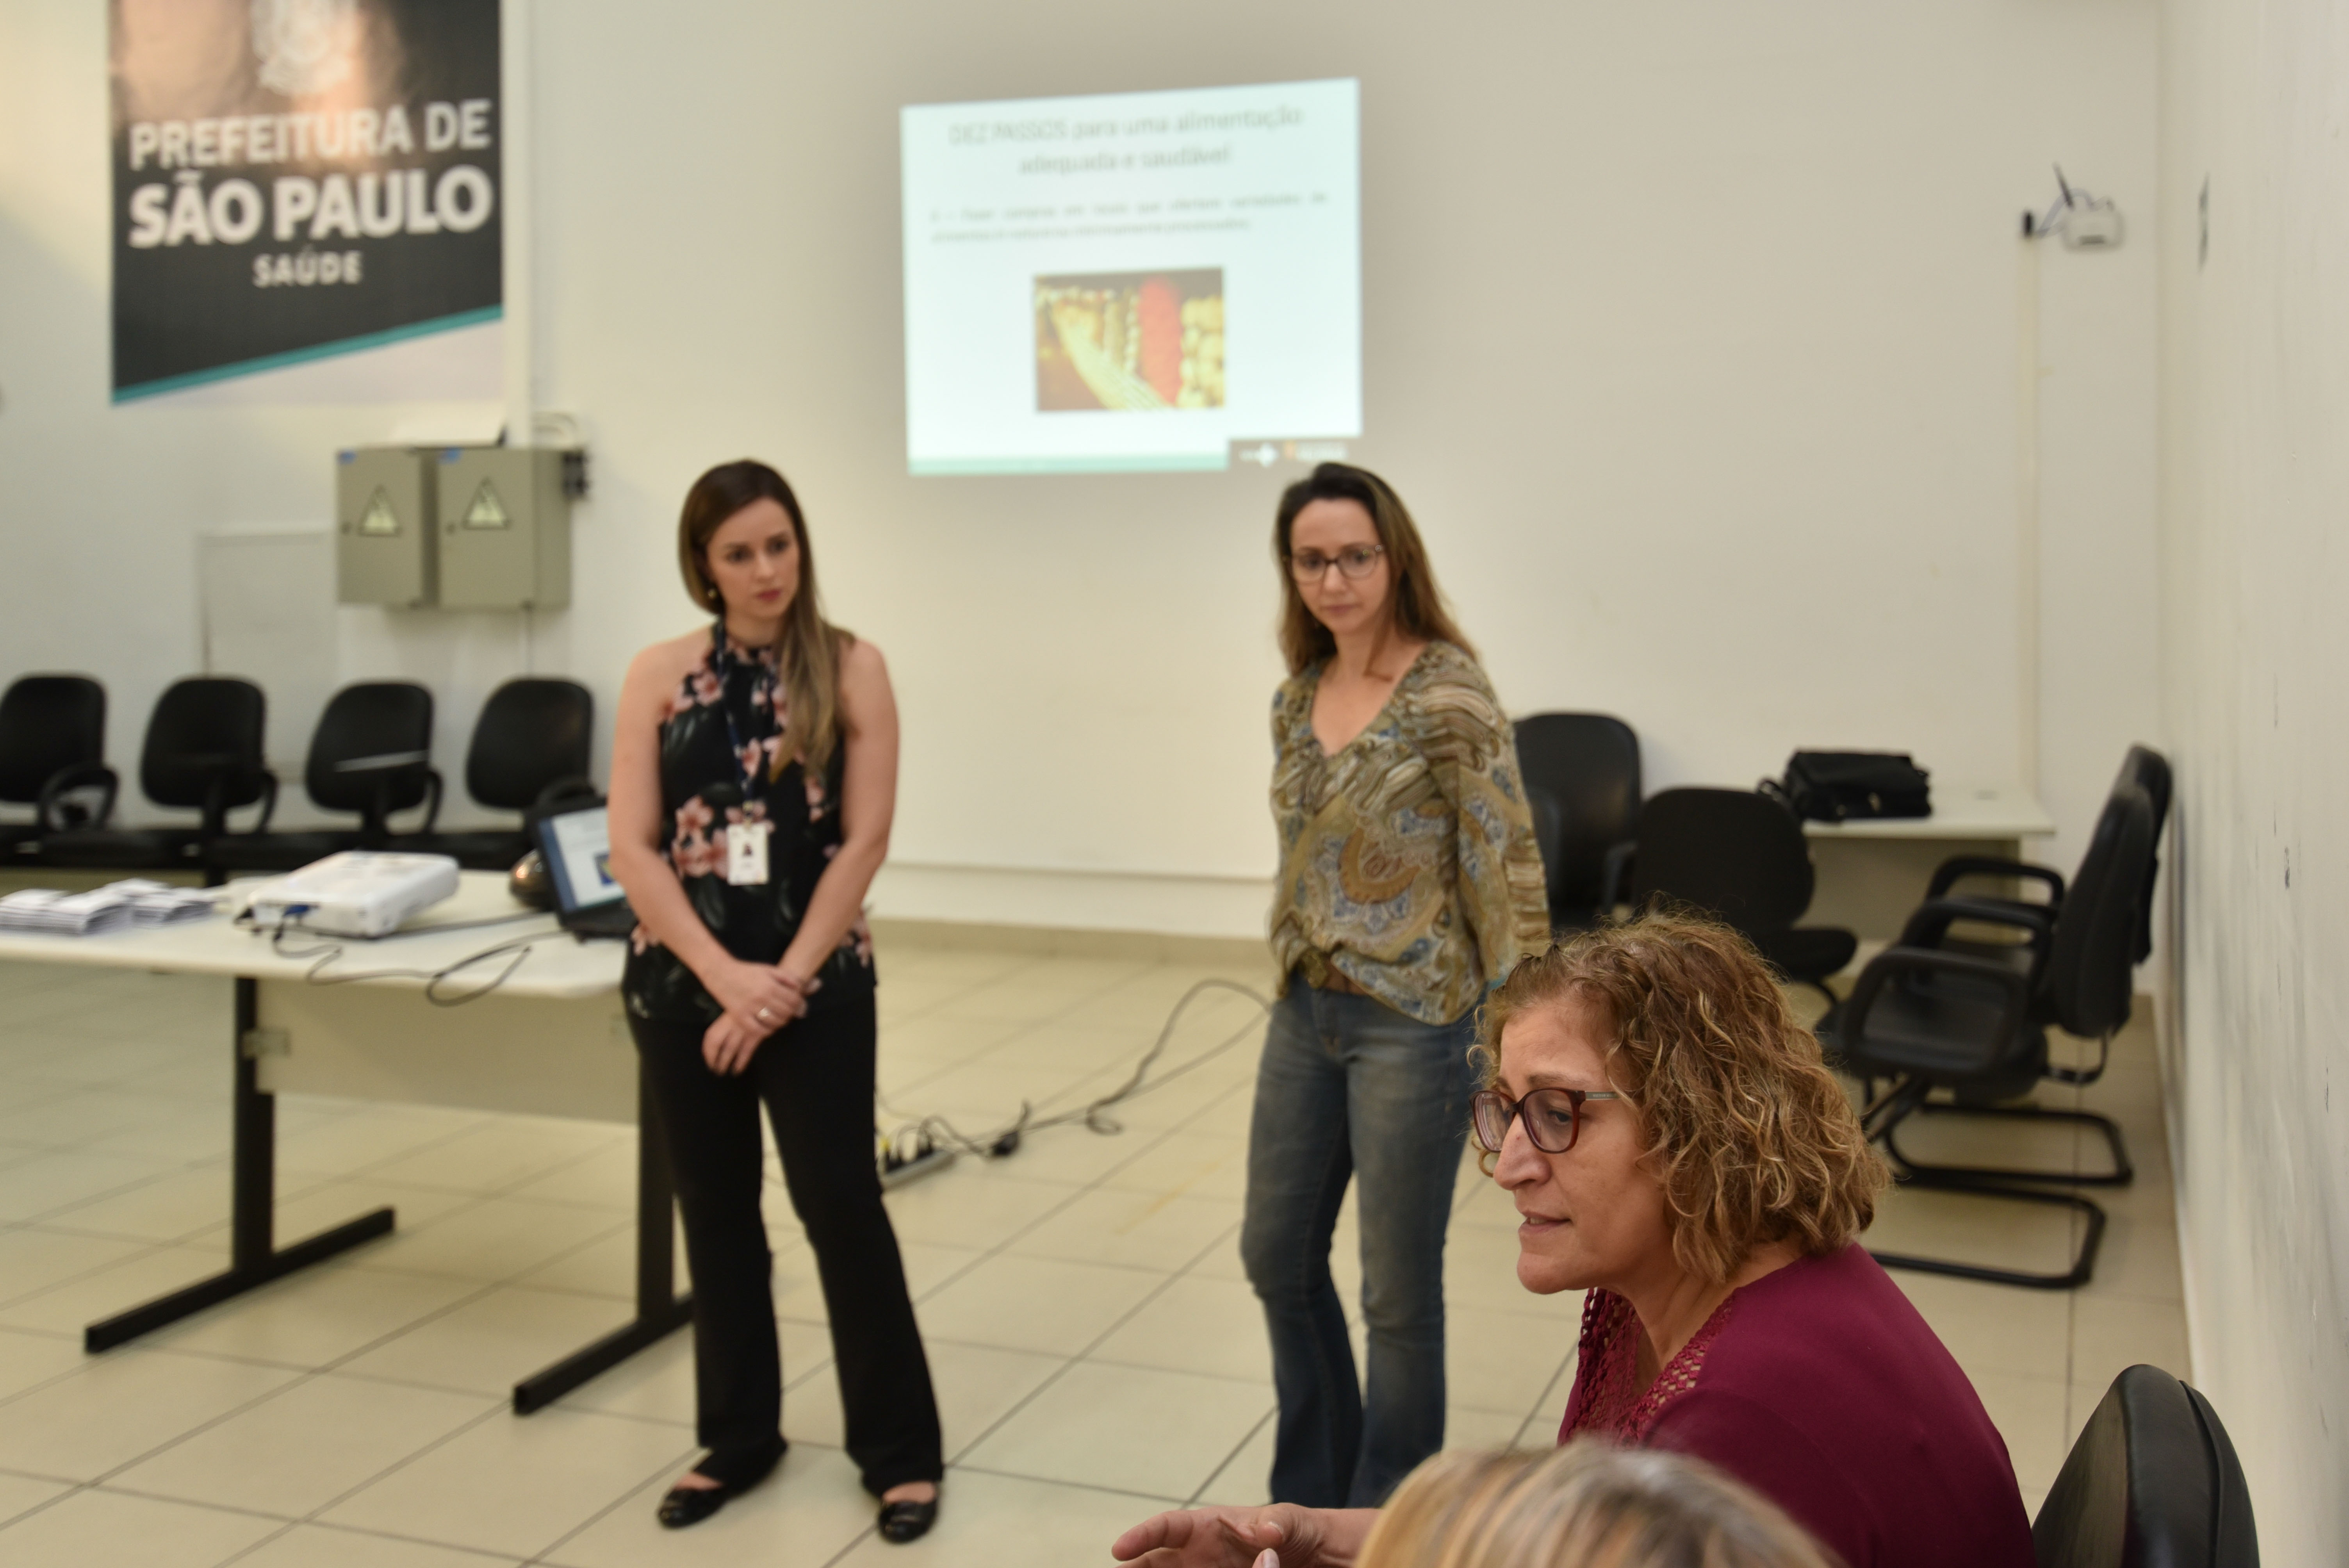 #Paracegover Na imagem: as nutricionistas Mariana Delega de Souza e Daniela Wenzel estão em pé ouvindo uma servidora que sentada à frente delas, no canto direito da foto 